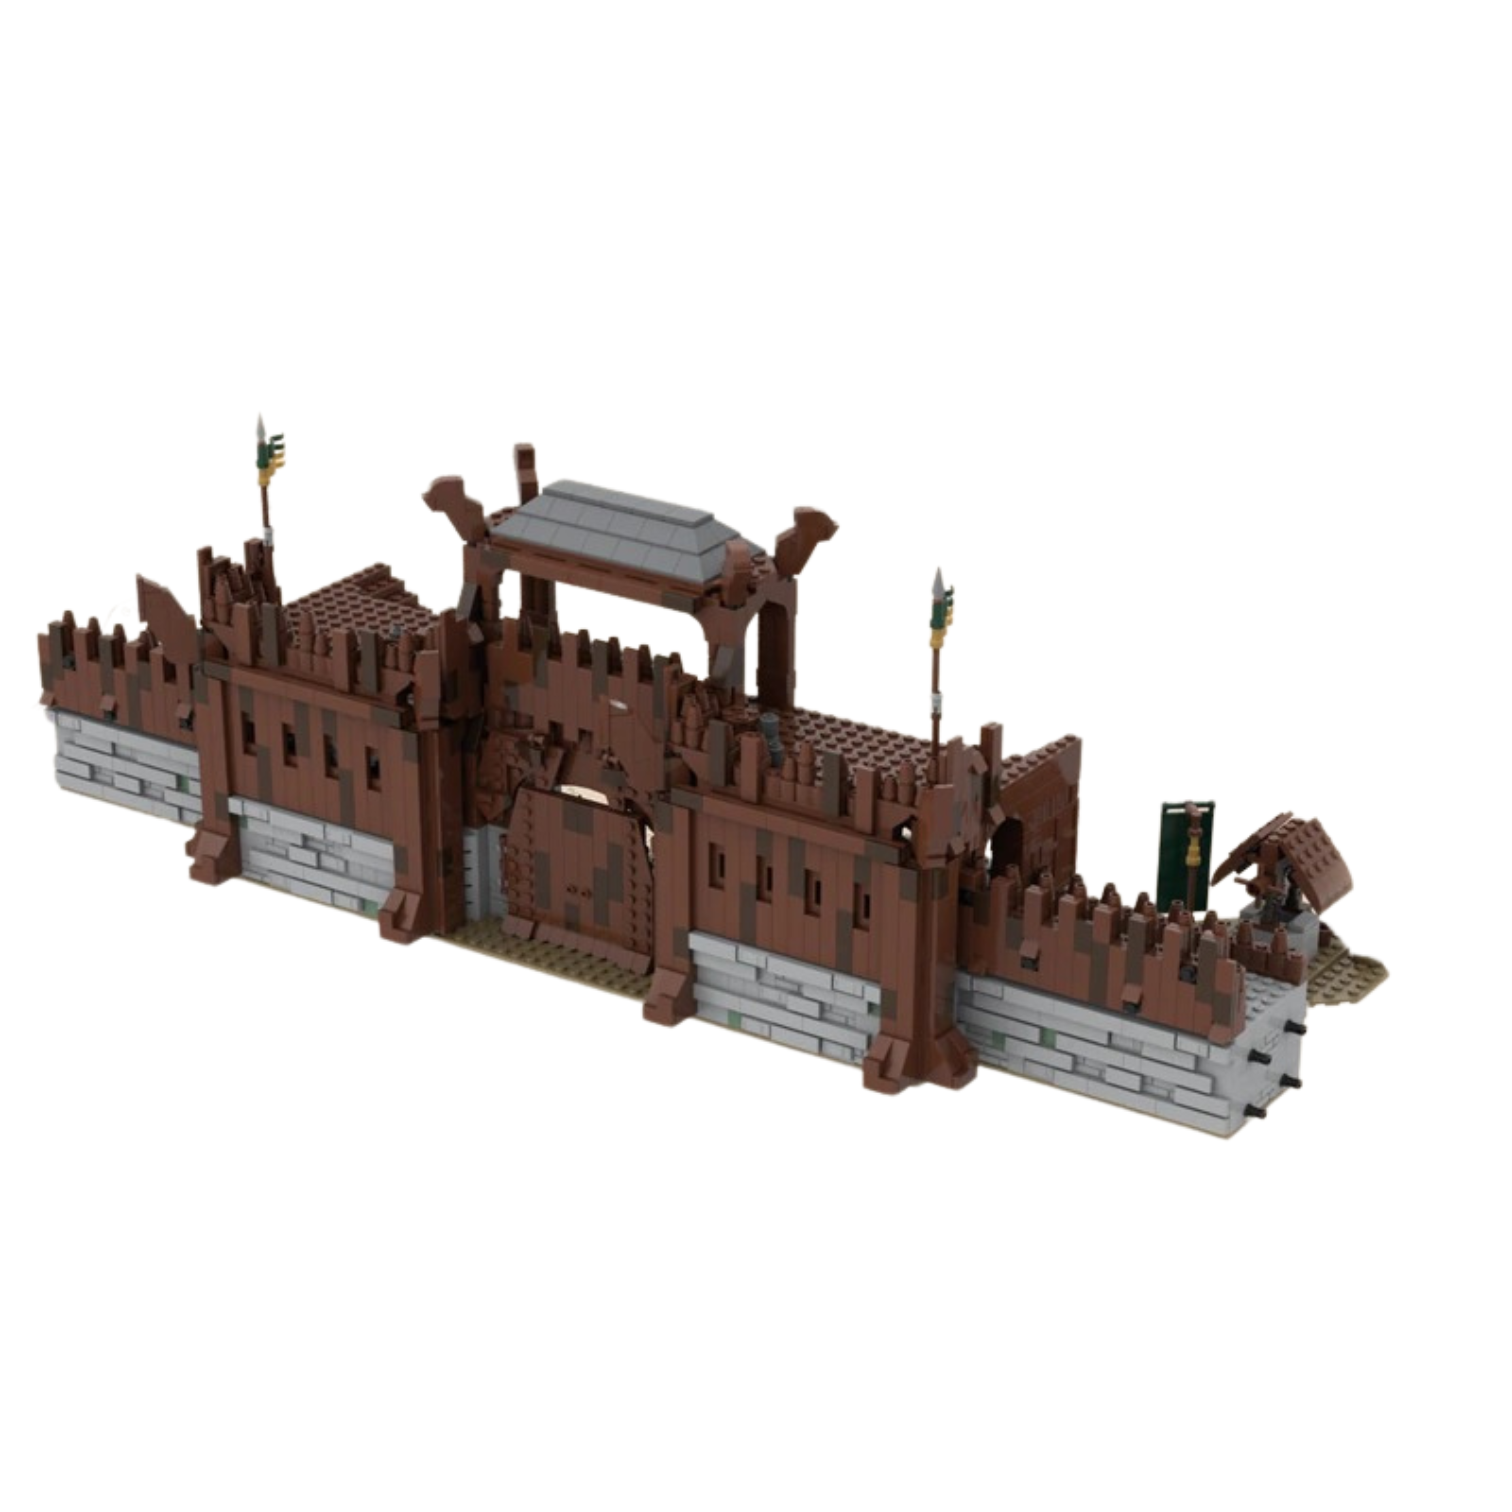 UCS Edoras – Great Walls MOC-65377 Modular Building With 2248 Pieces